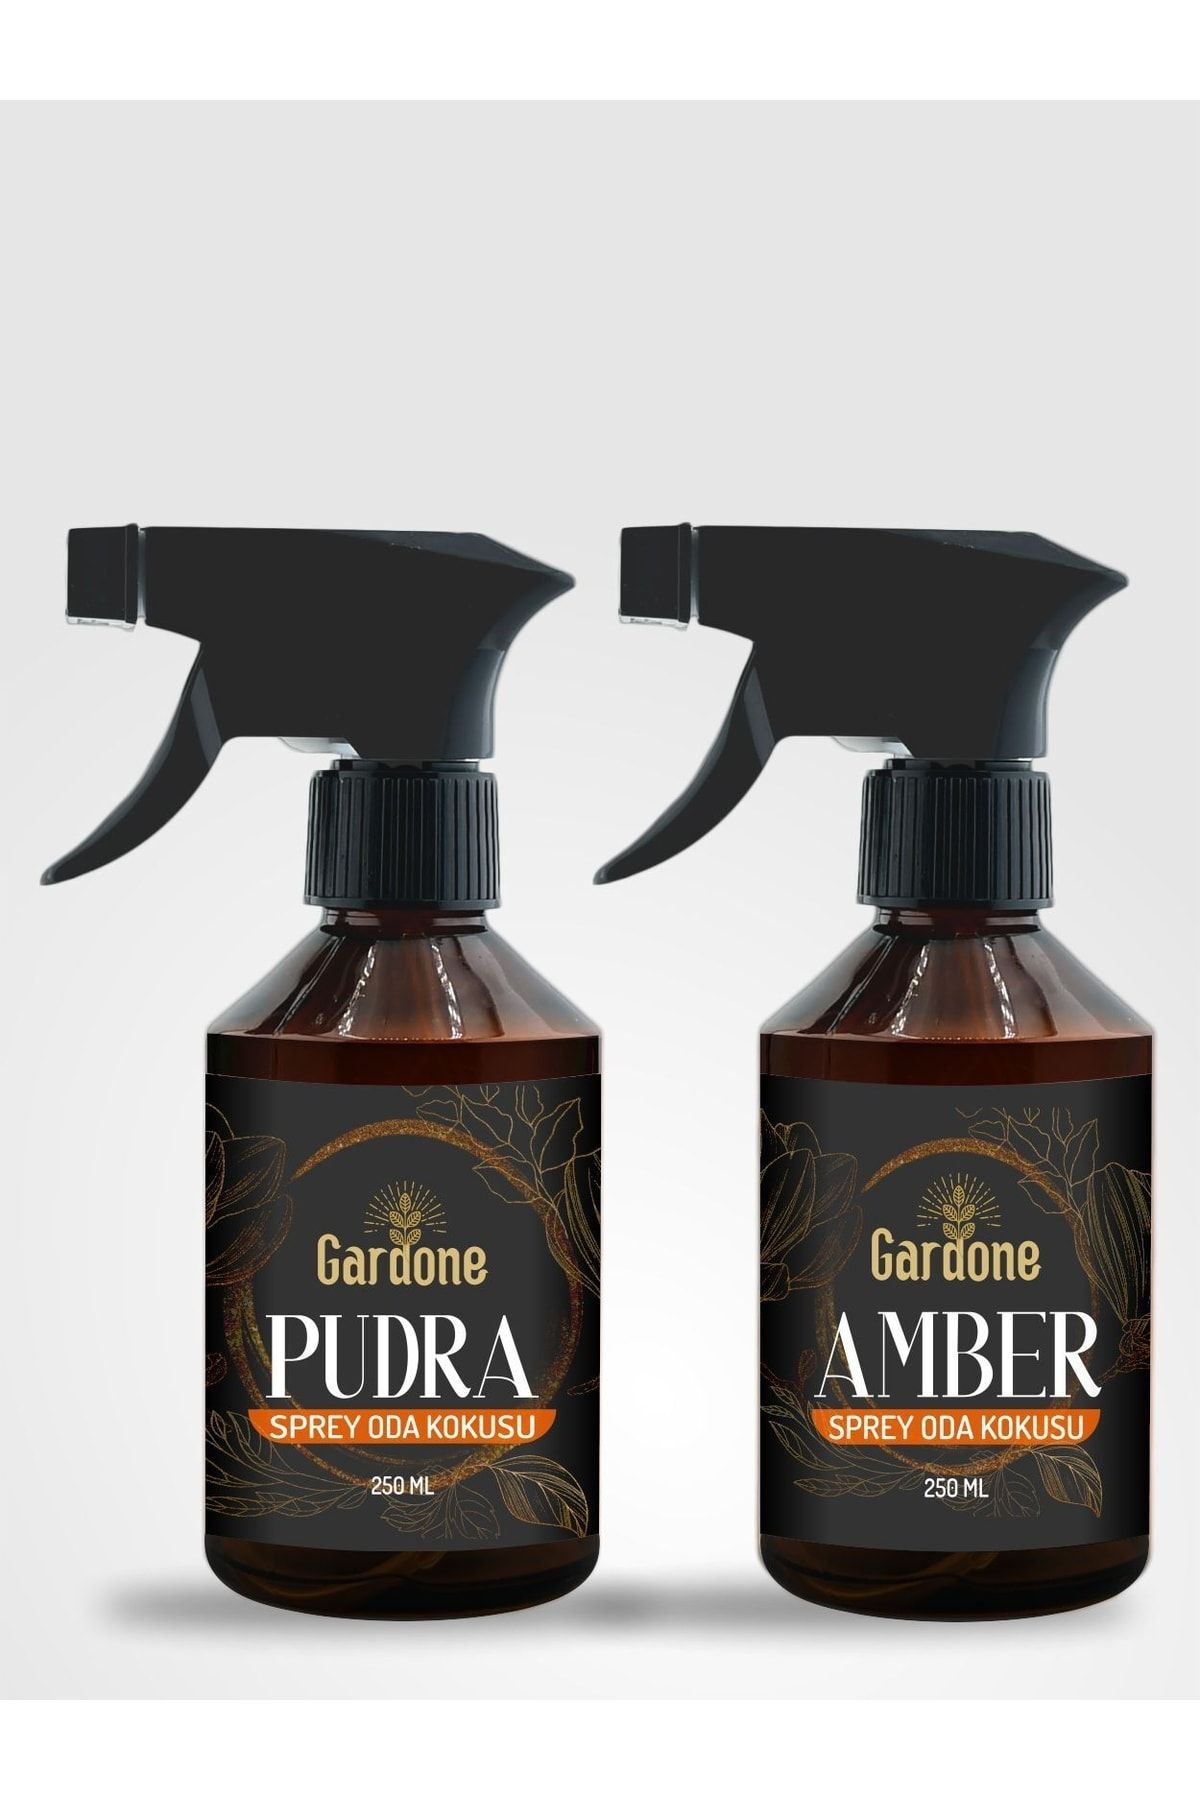 Gardone Amber, Pudra Oda Ve Çamaşır Spreyi Oda Parfümü Koku Giderici 2x250 ml